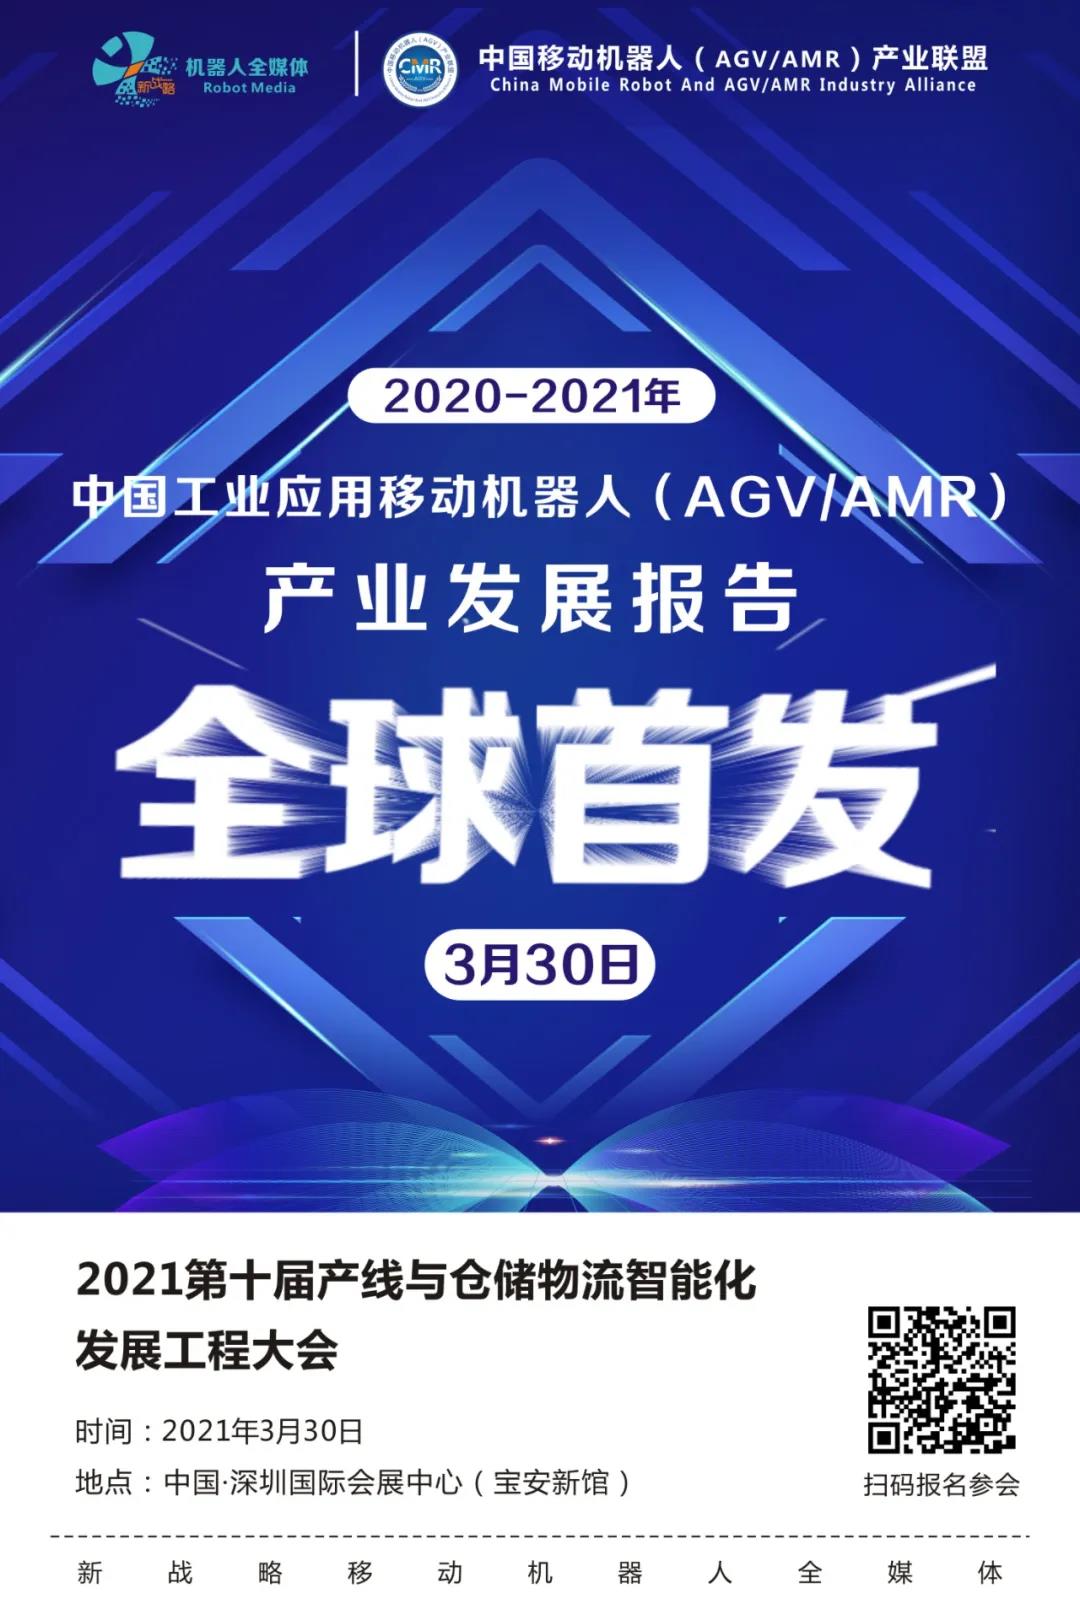 2020年中国市场AGV/AMR新增量41000台，市场规模76.8亿元